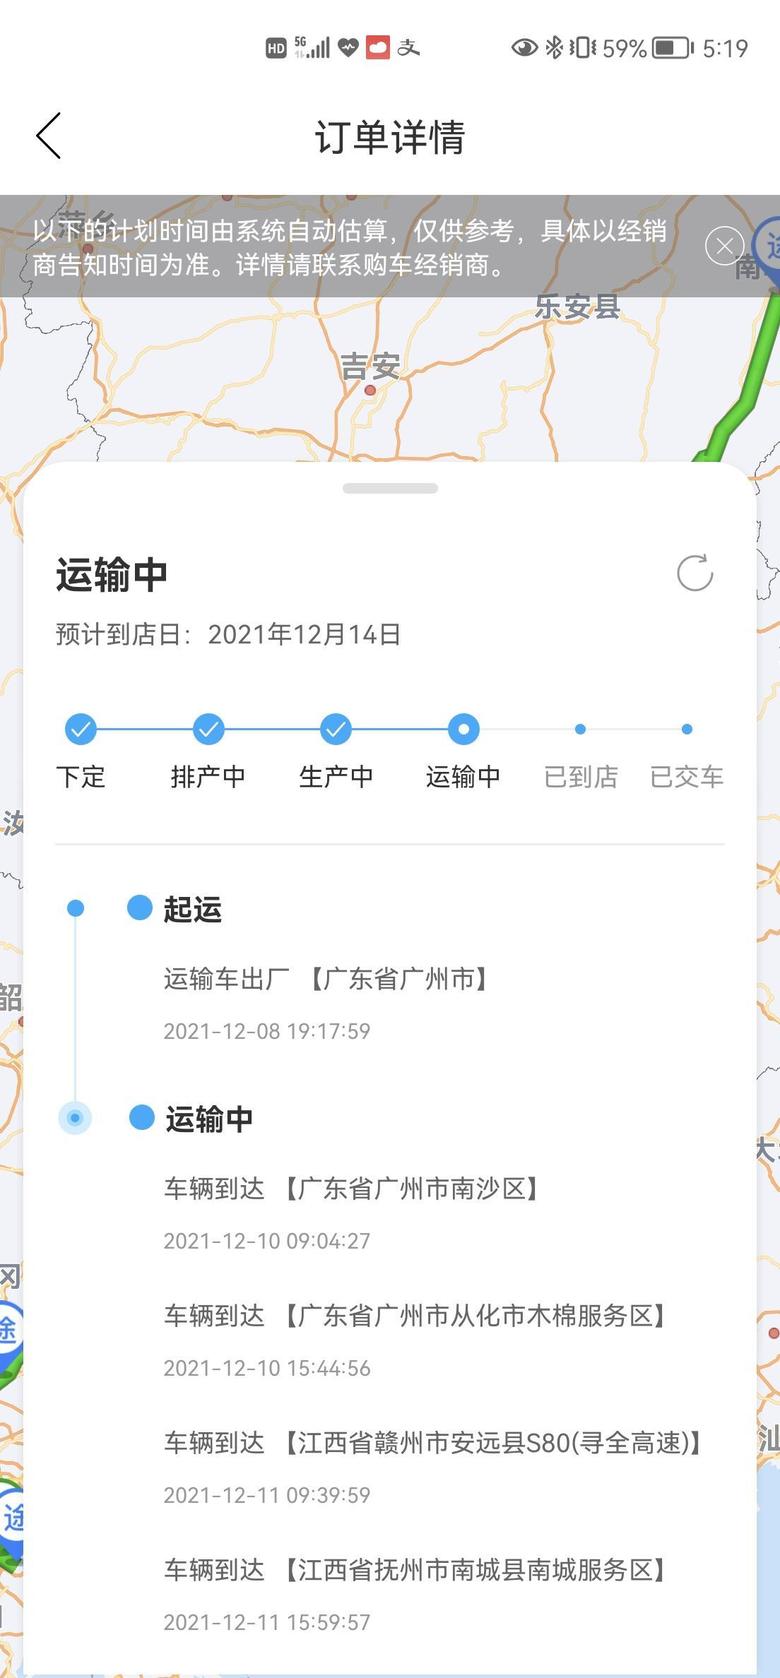 汉兰达 App显示车还在江西，距离目的地还有600公里，可4S店通知车已到店。这种App有个鸟用？